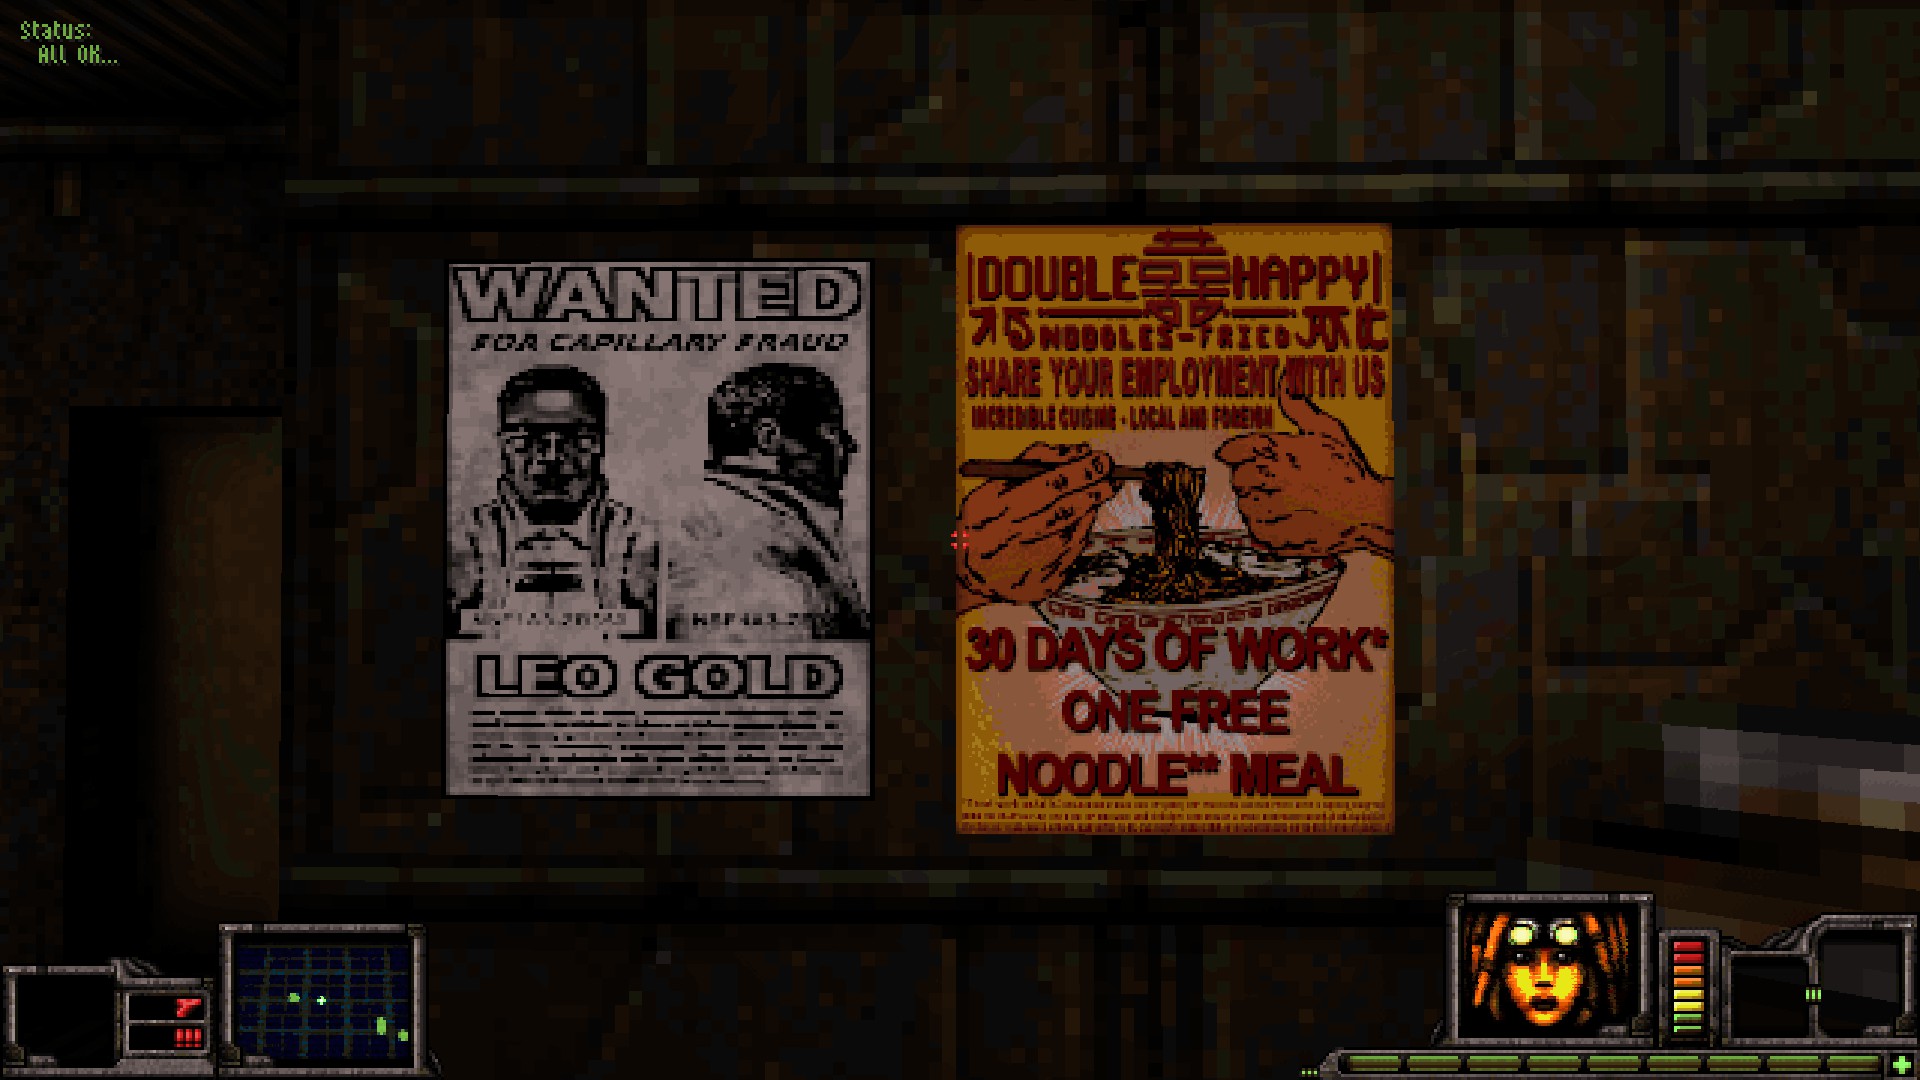 Référence Deus Ex dans Fortune's Run: Wanted affiche pour "Lion d'or" un antagoniste de la mission Liberty Island de DX